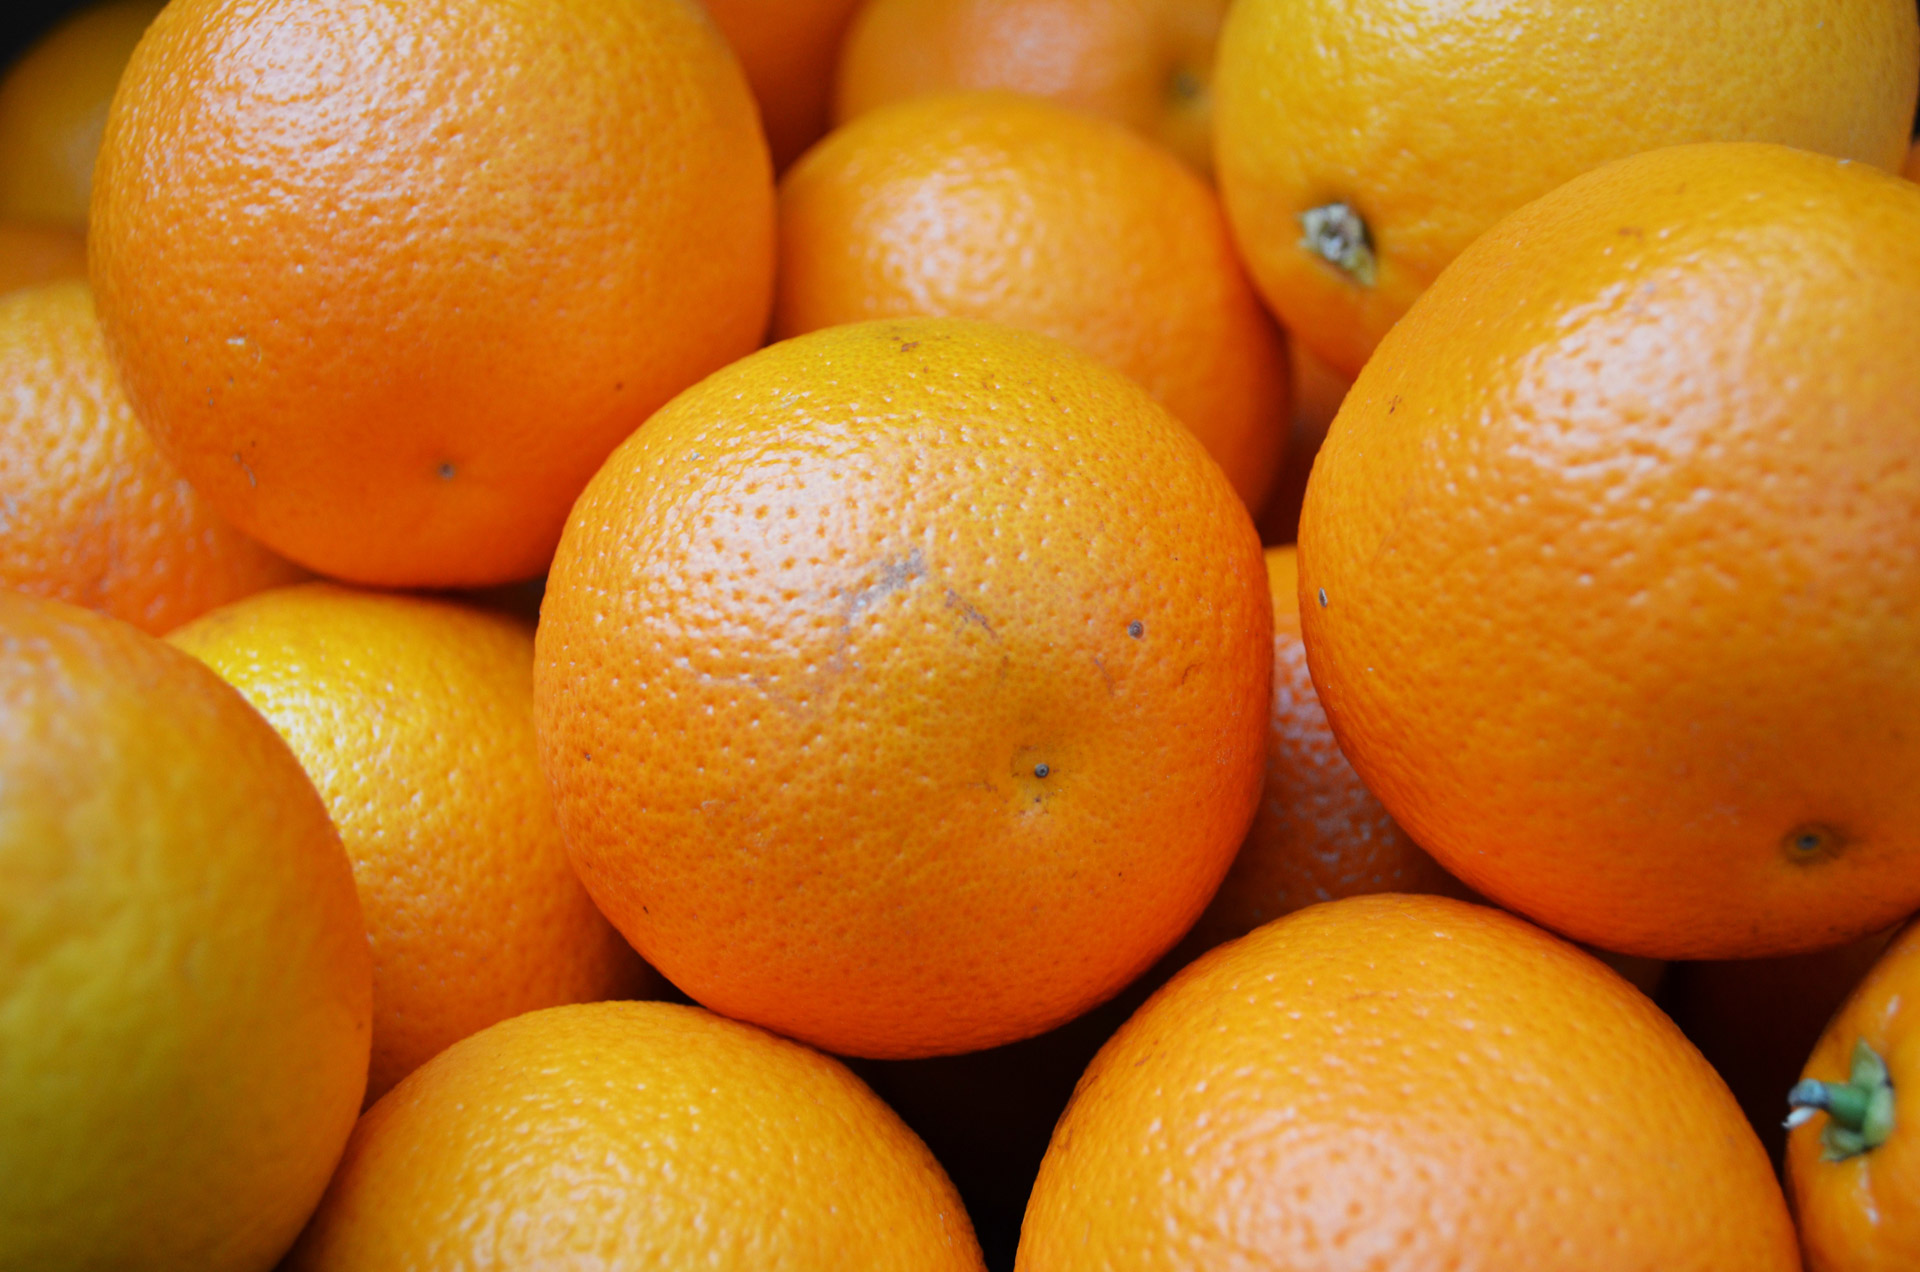 Orange Oranges Free Stock Photo Public Domain Pictures